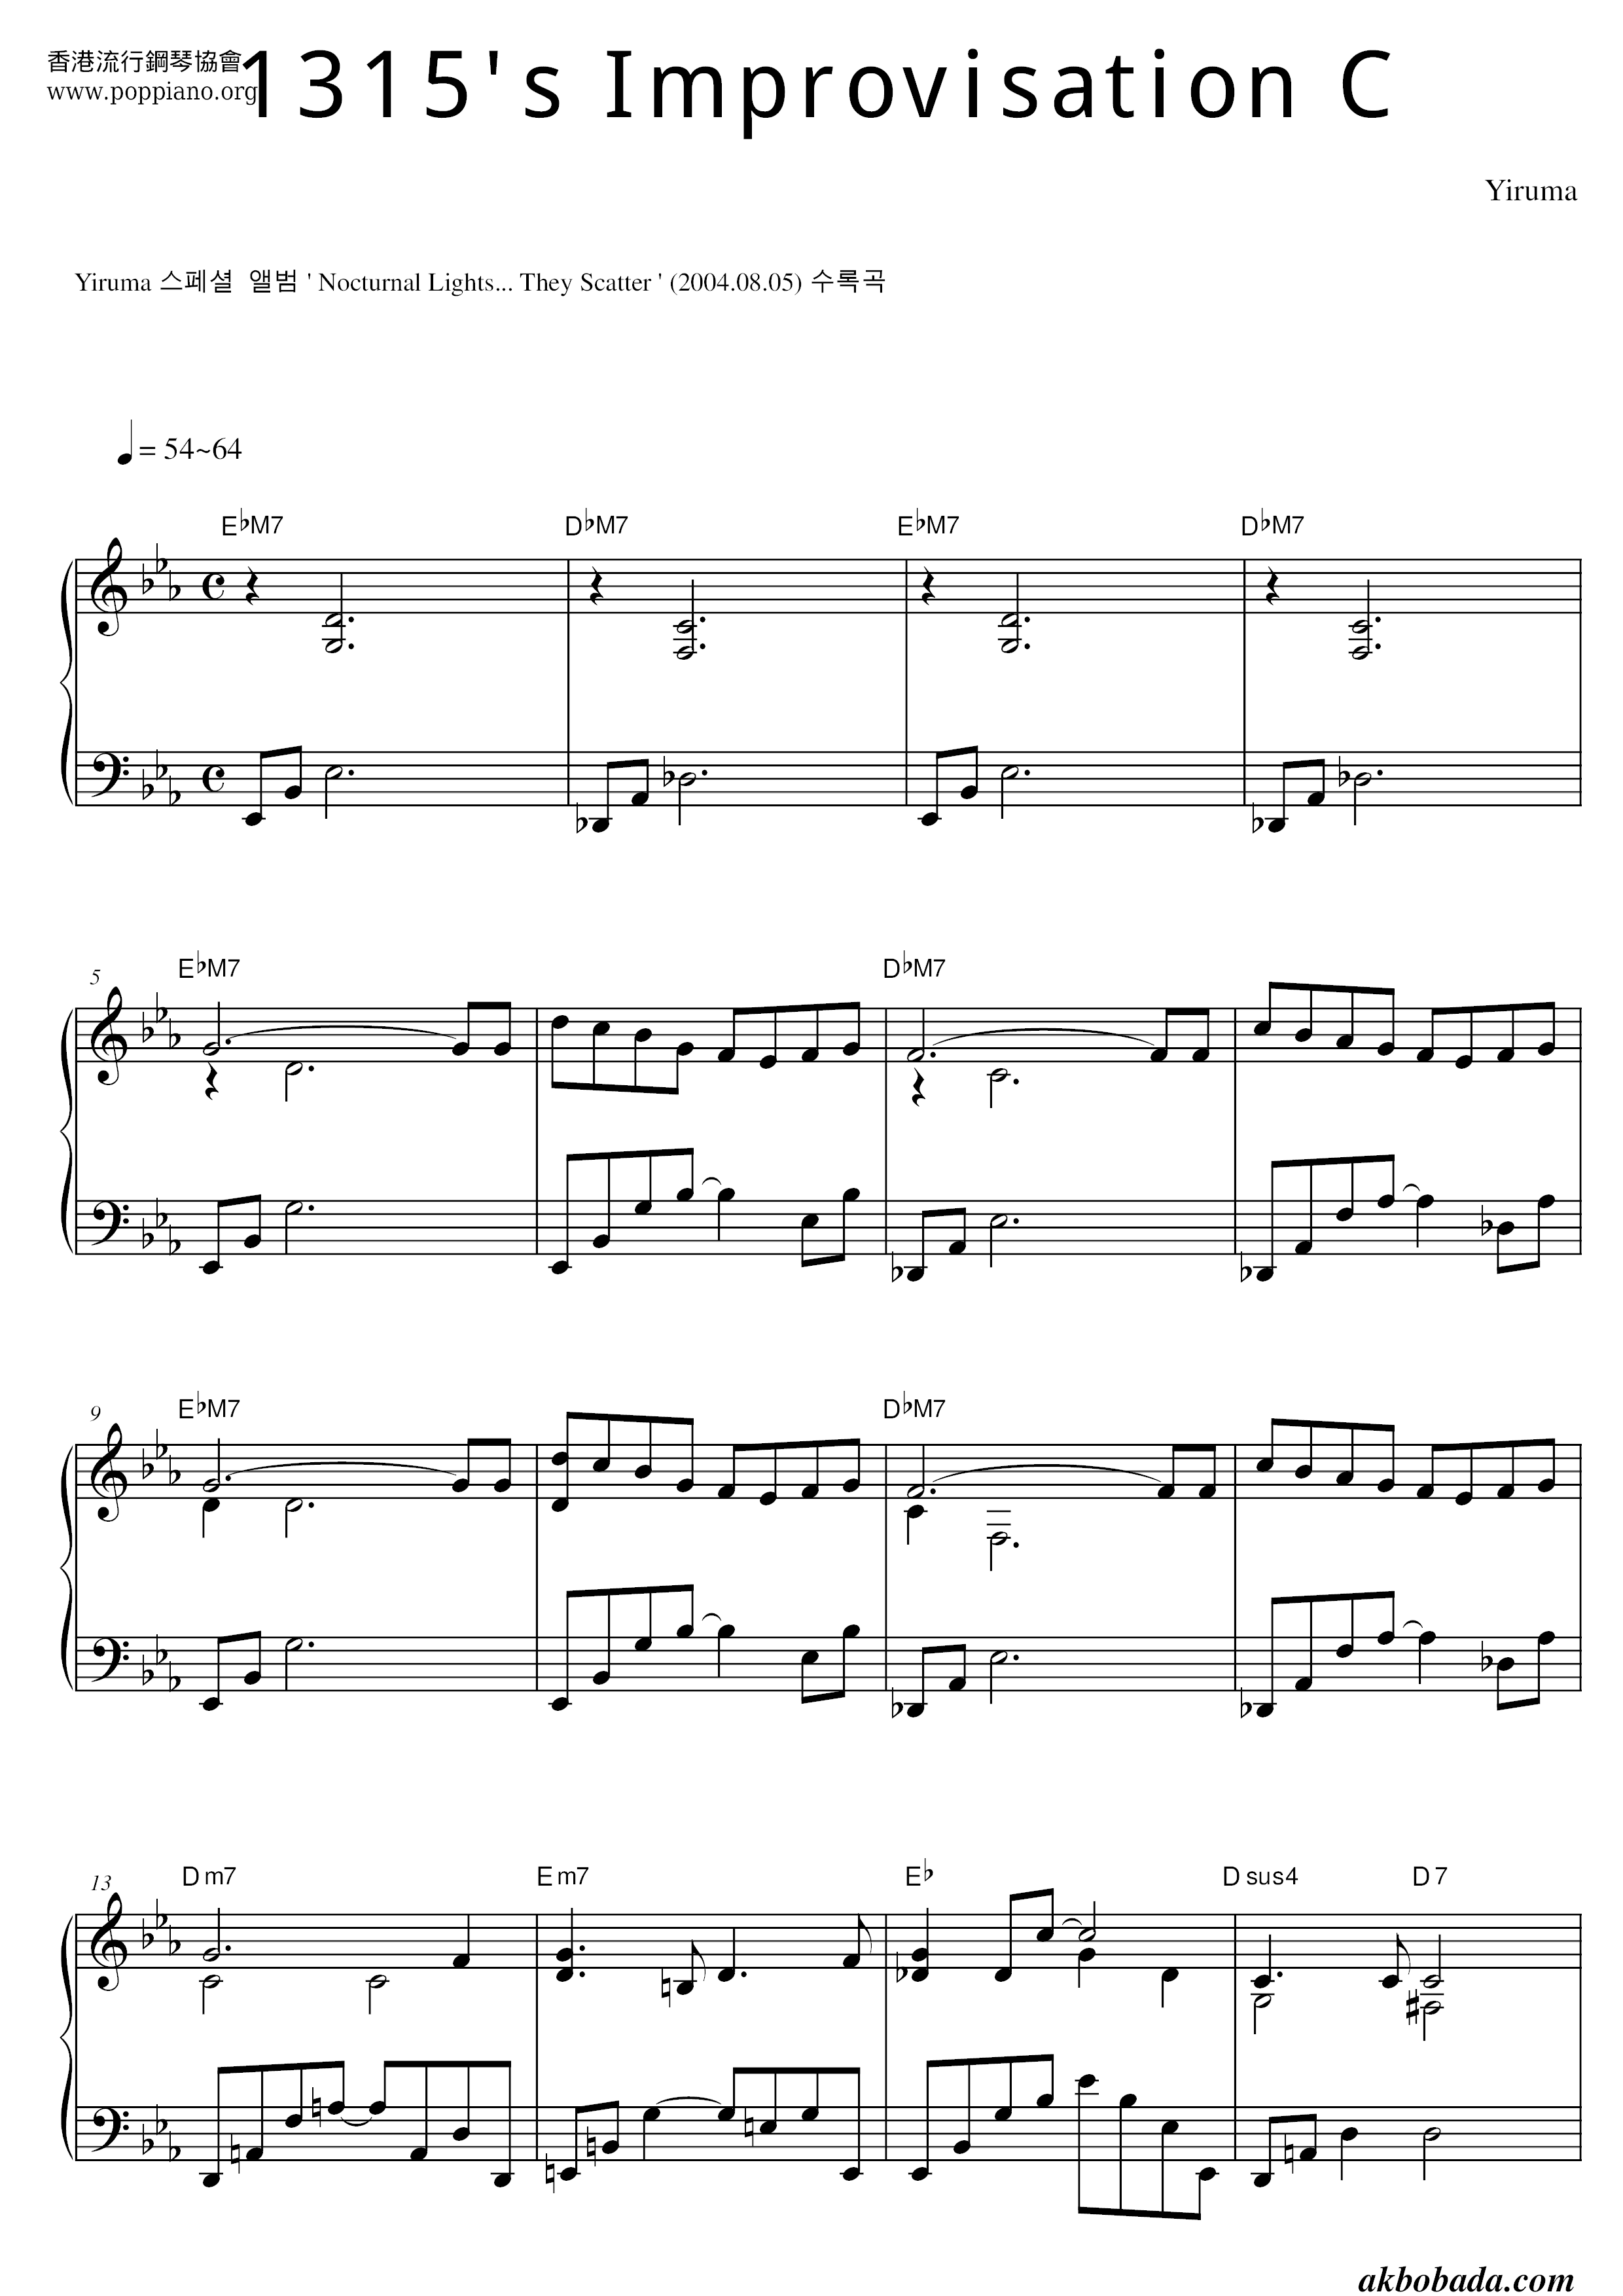 1315's Improvisation C琴谱